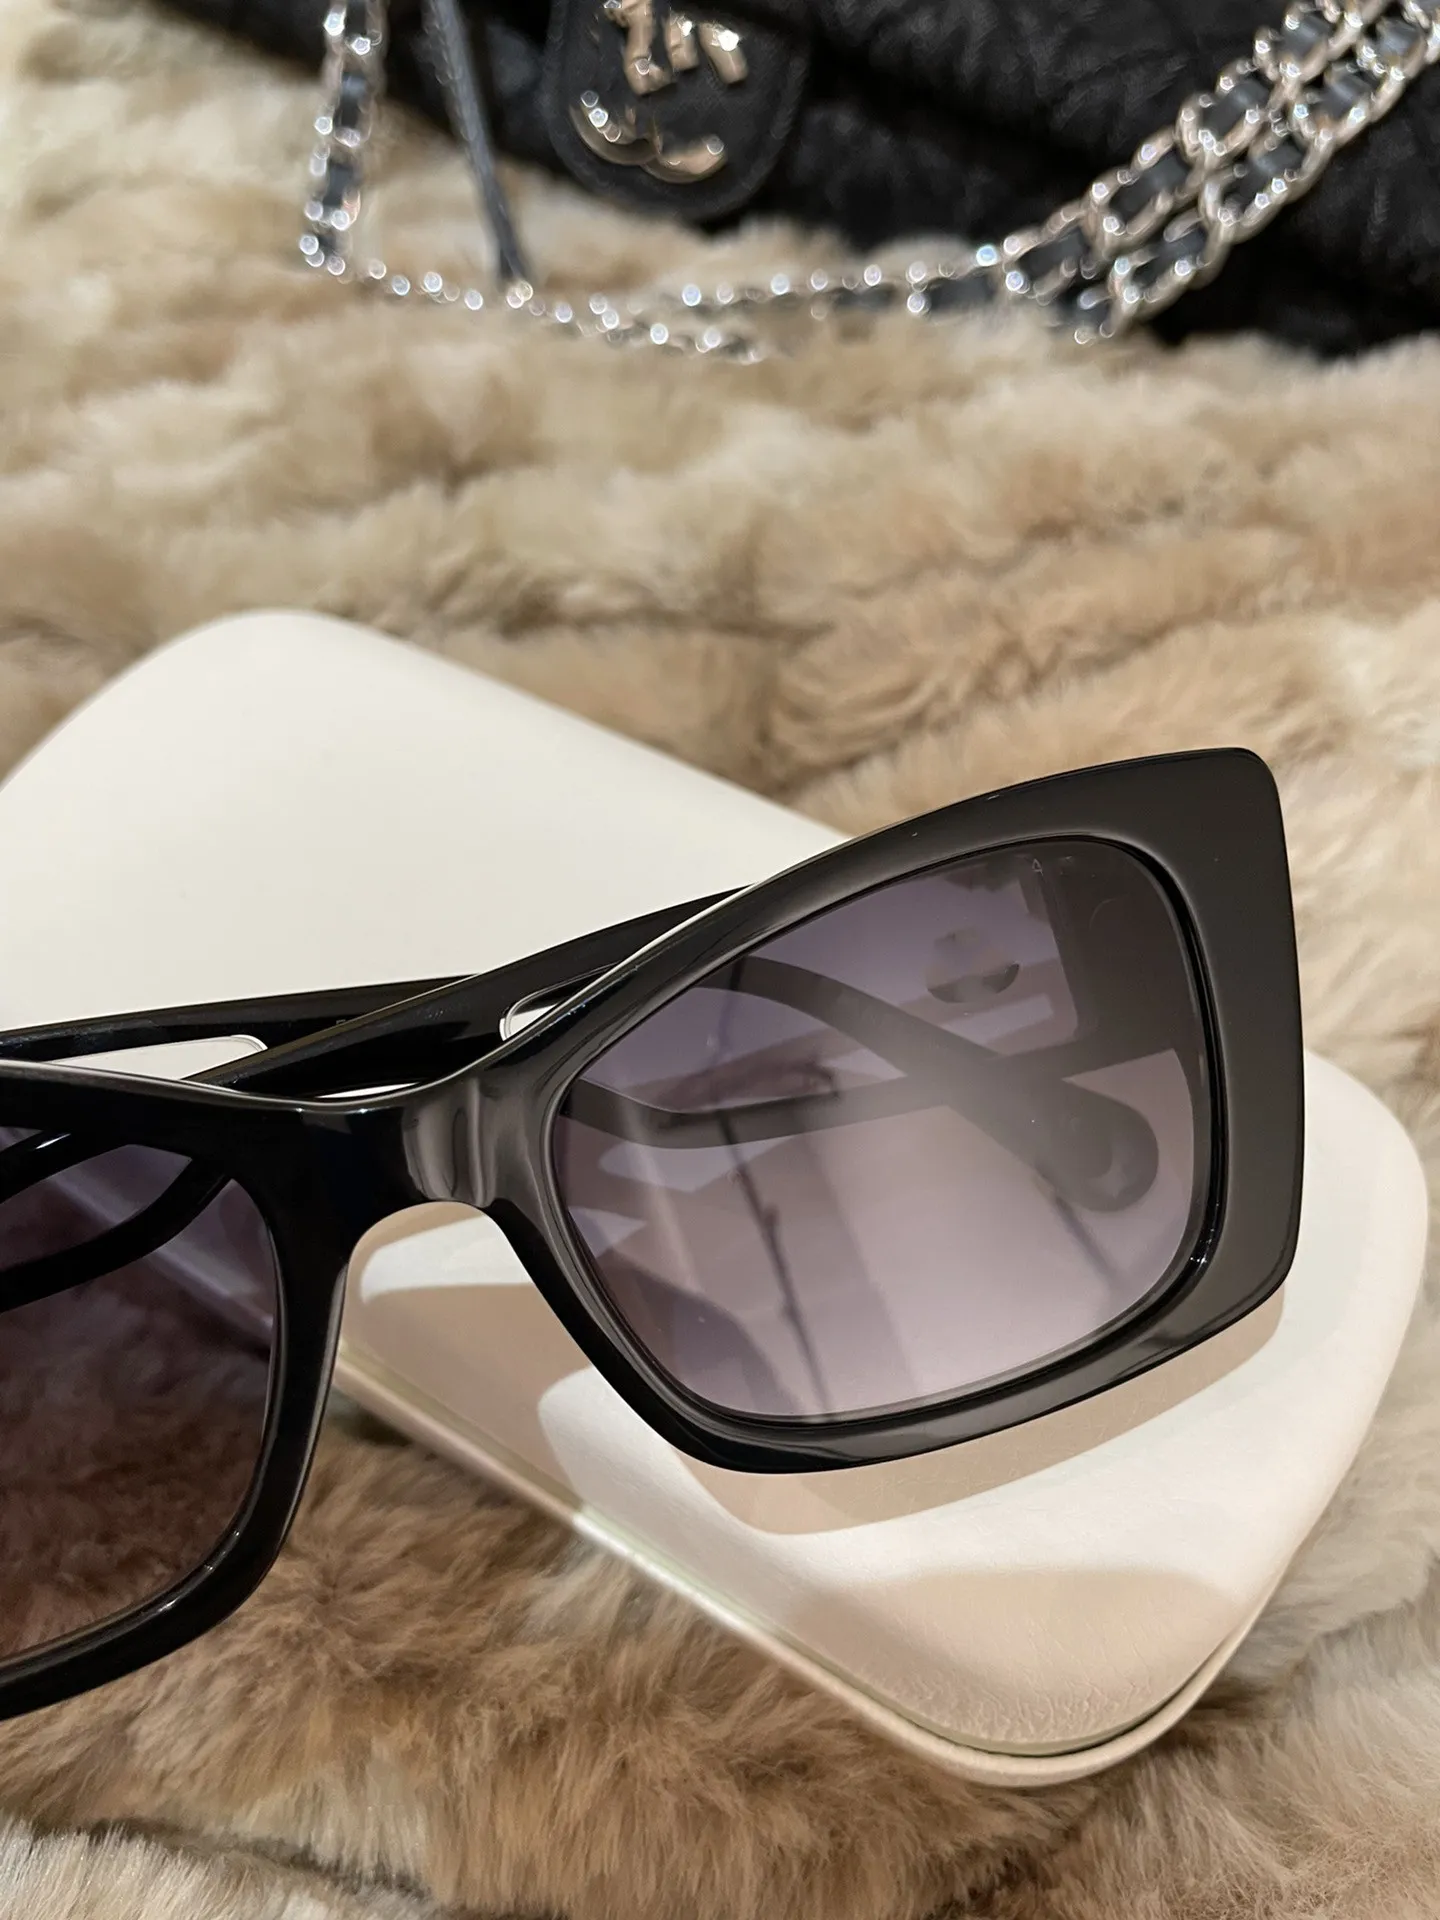 Óculos de sol pretos de alta qualidade, canal 5430, óculos de sol de grife, óculos de sol masculinos, famosos, elegantes, clássicos, retrô, marcas de luxo, óculos de sol fashion para mulheres com caixa